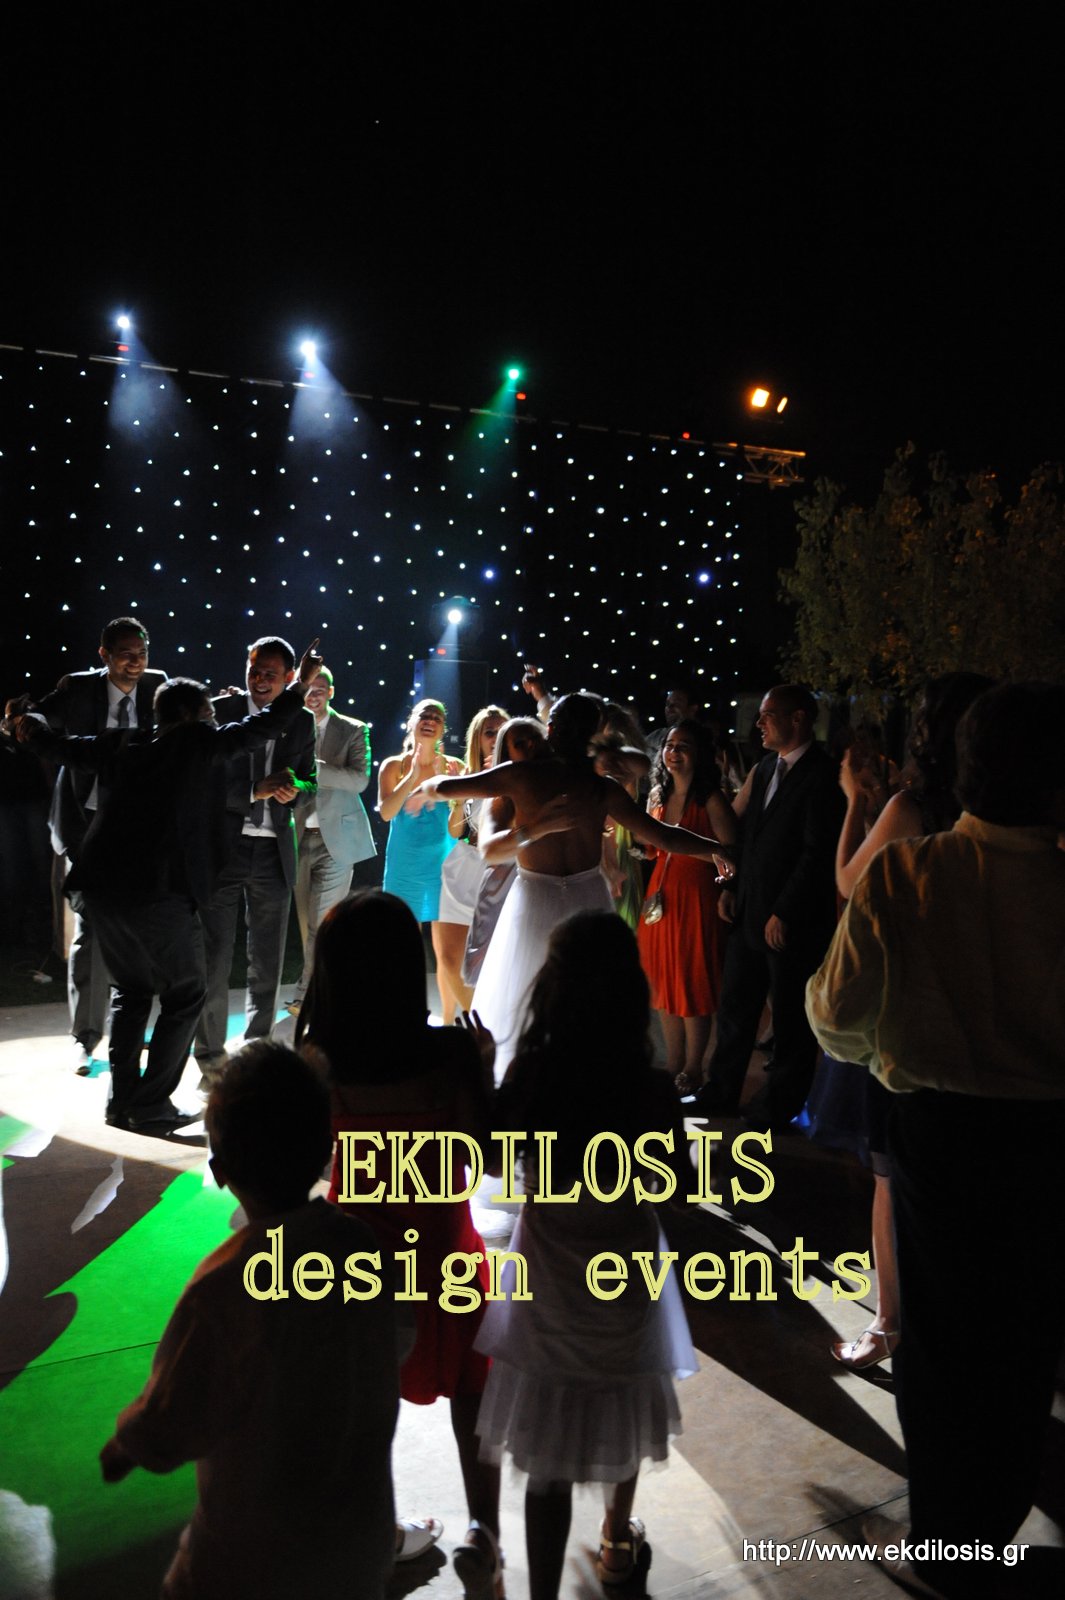 πίστες χορού εκδηλώσεων & πάρτι της ekdilosis event production